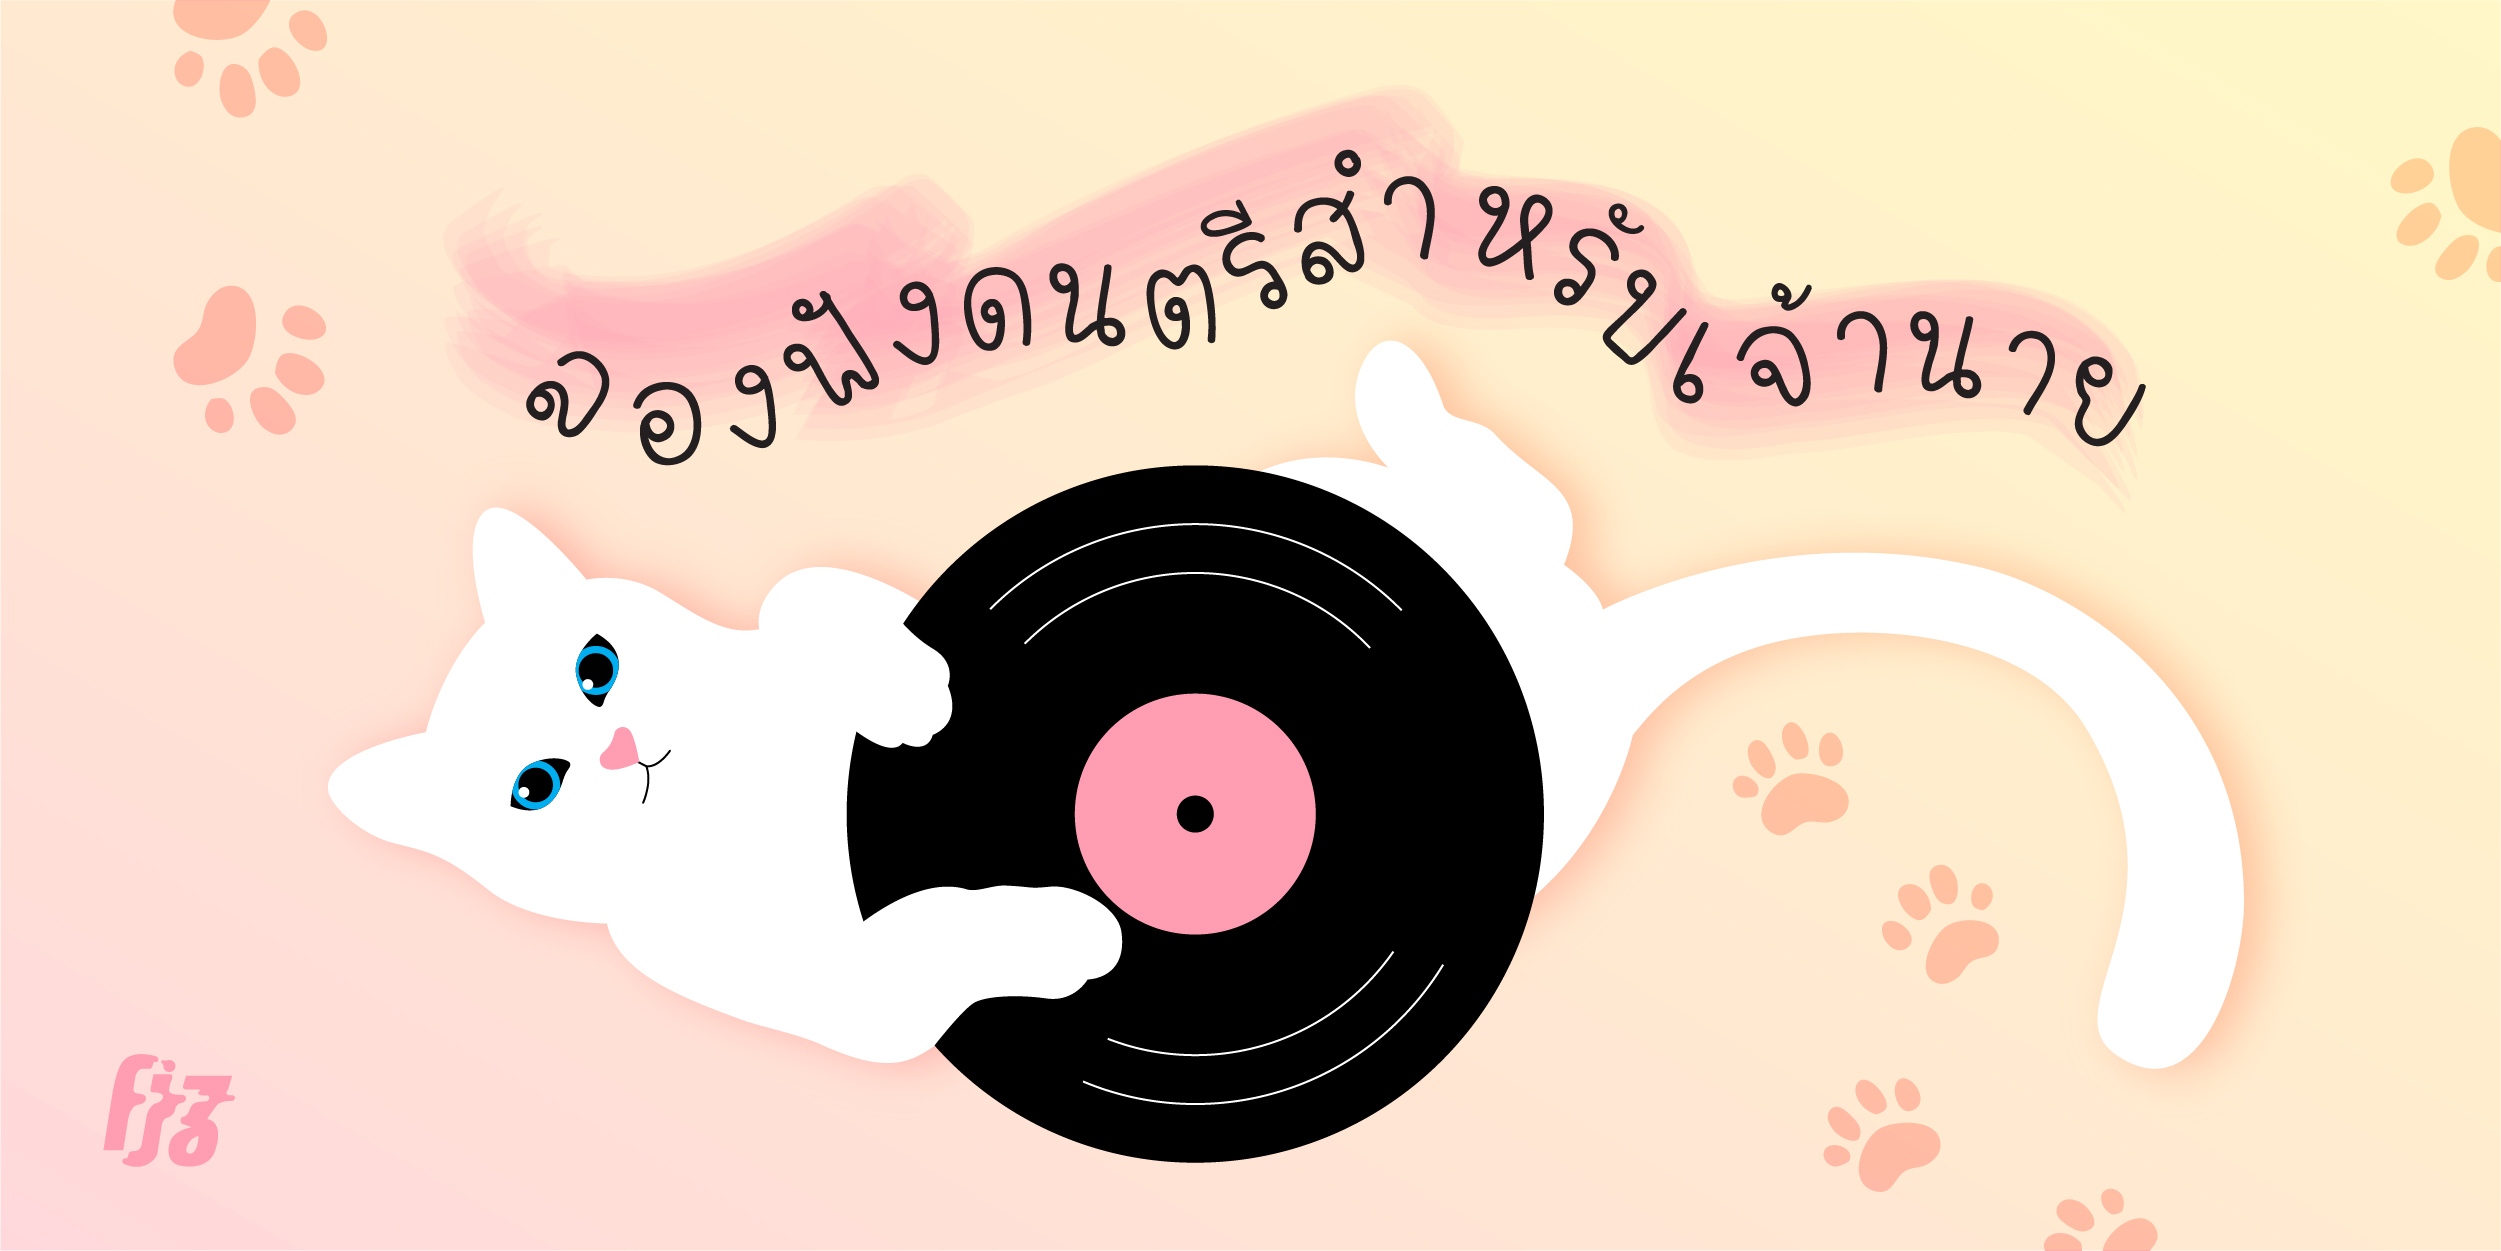 ‘Music for Cat’ อัลบั้มเพลงที่ทำมาเพื่อเจ้าเหมียวโดยเฉพาะ ทาสทั้งหลายต้องมีติดเครื่อง